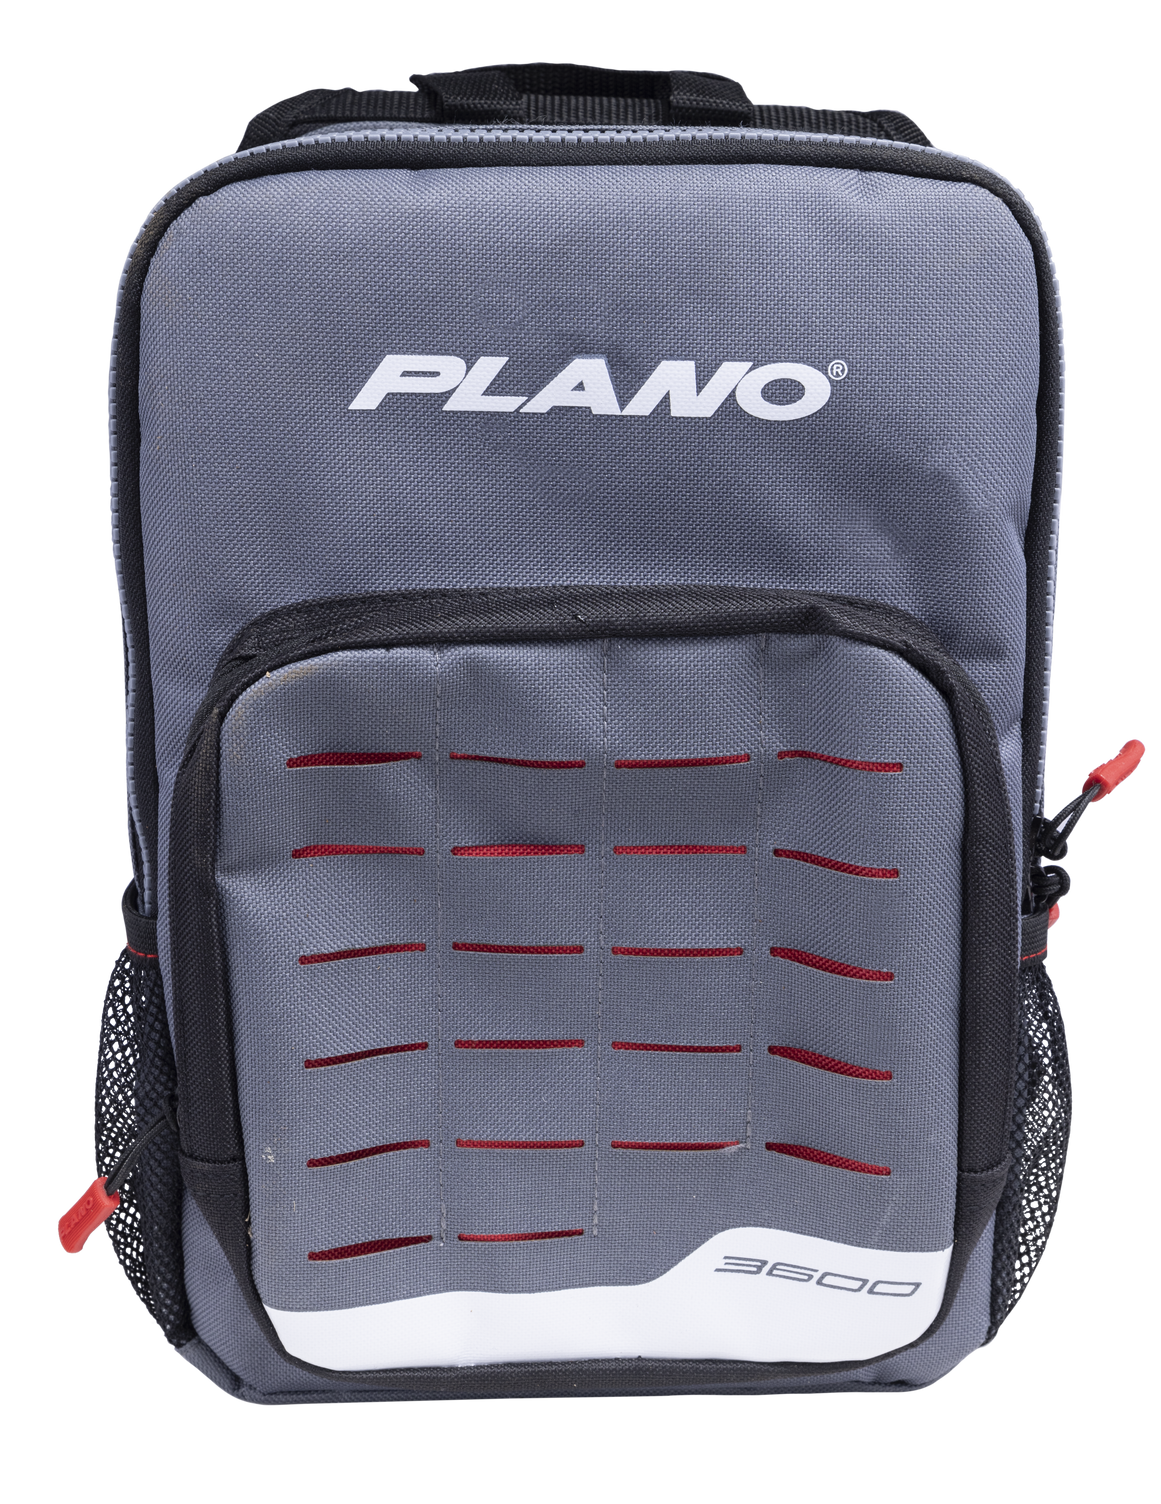 Plano 1567656 Weekend Series 3600 Tackle Storage Sling Pack